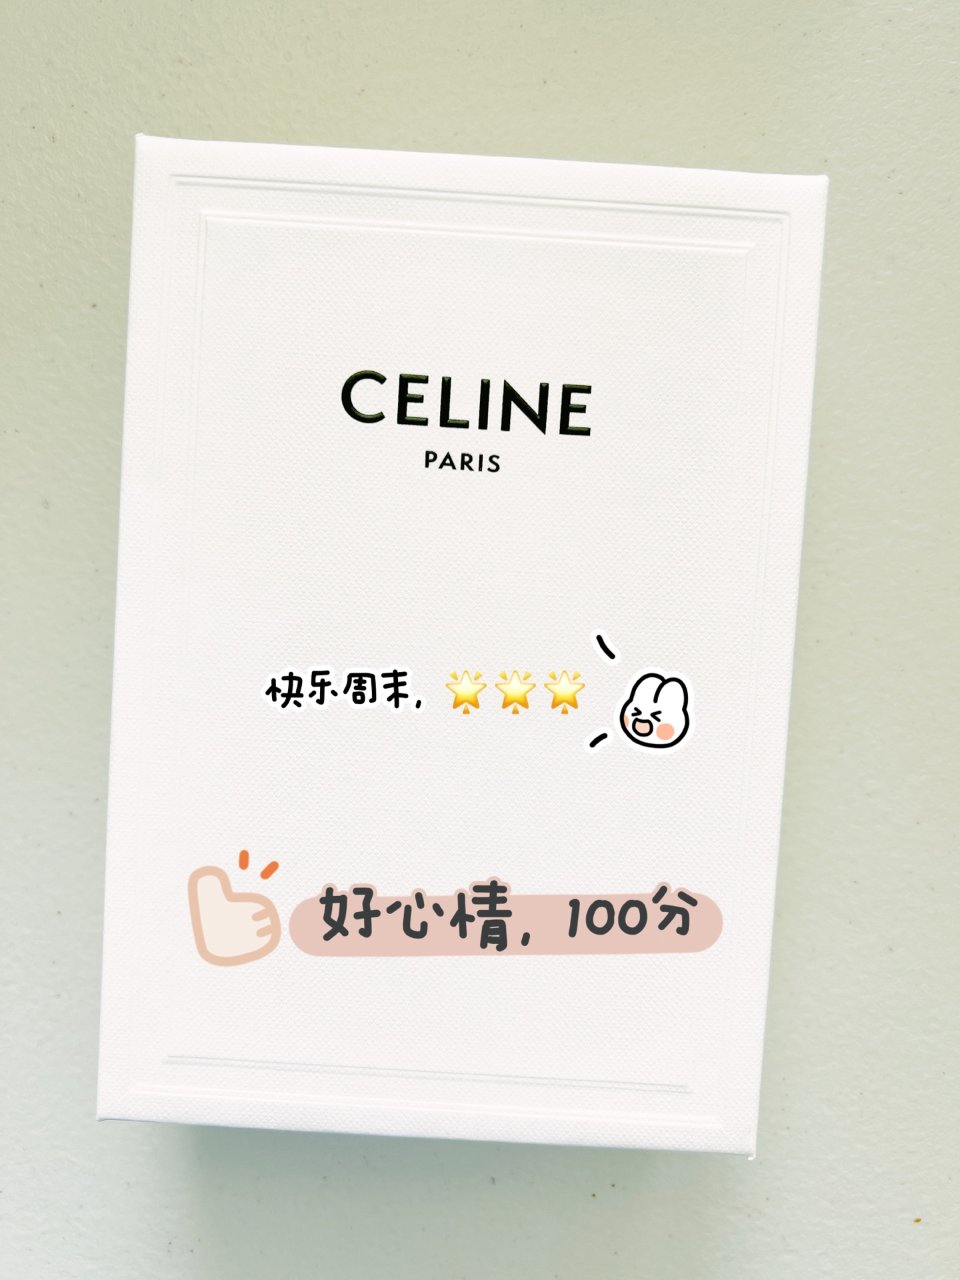 Celine 的这款卡包长在我的审美上了...